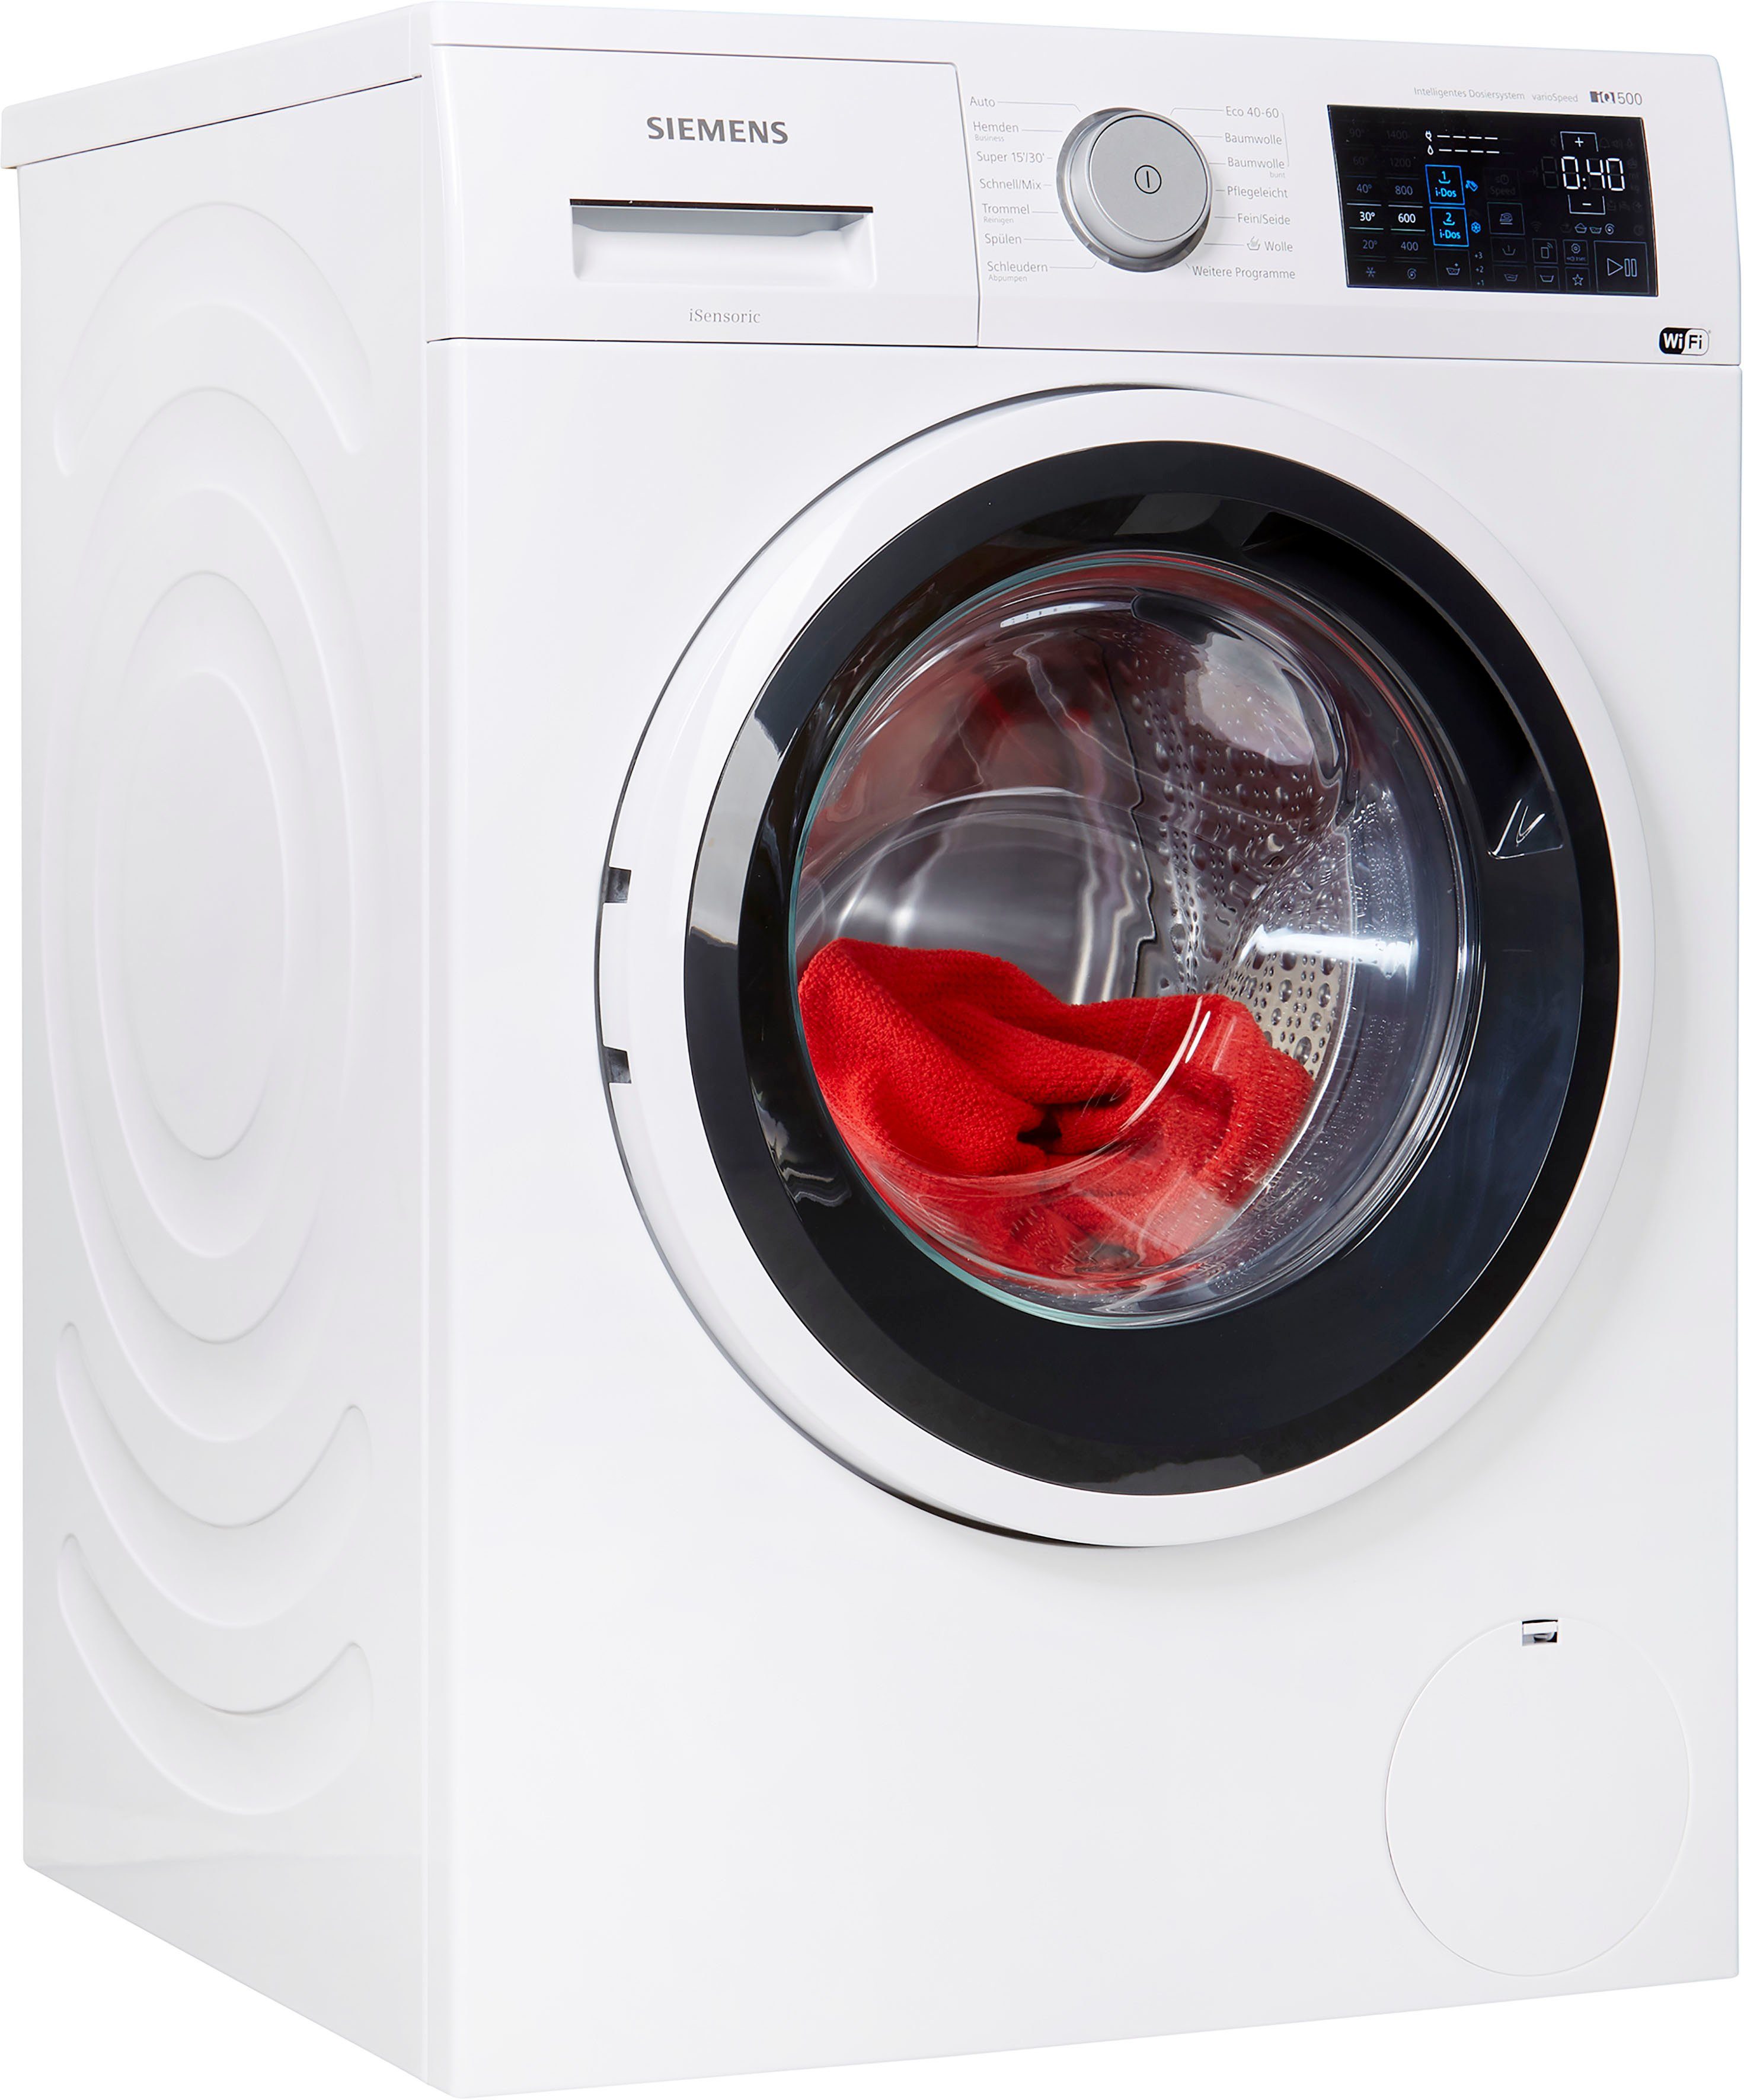 SIEMENS Waschmaschine iQ500 WM14UP40, 9 kg, 1400 U/min online kaufen | OTTO